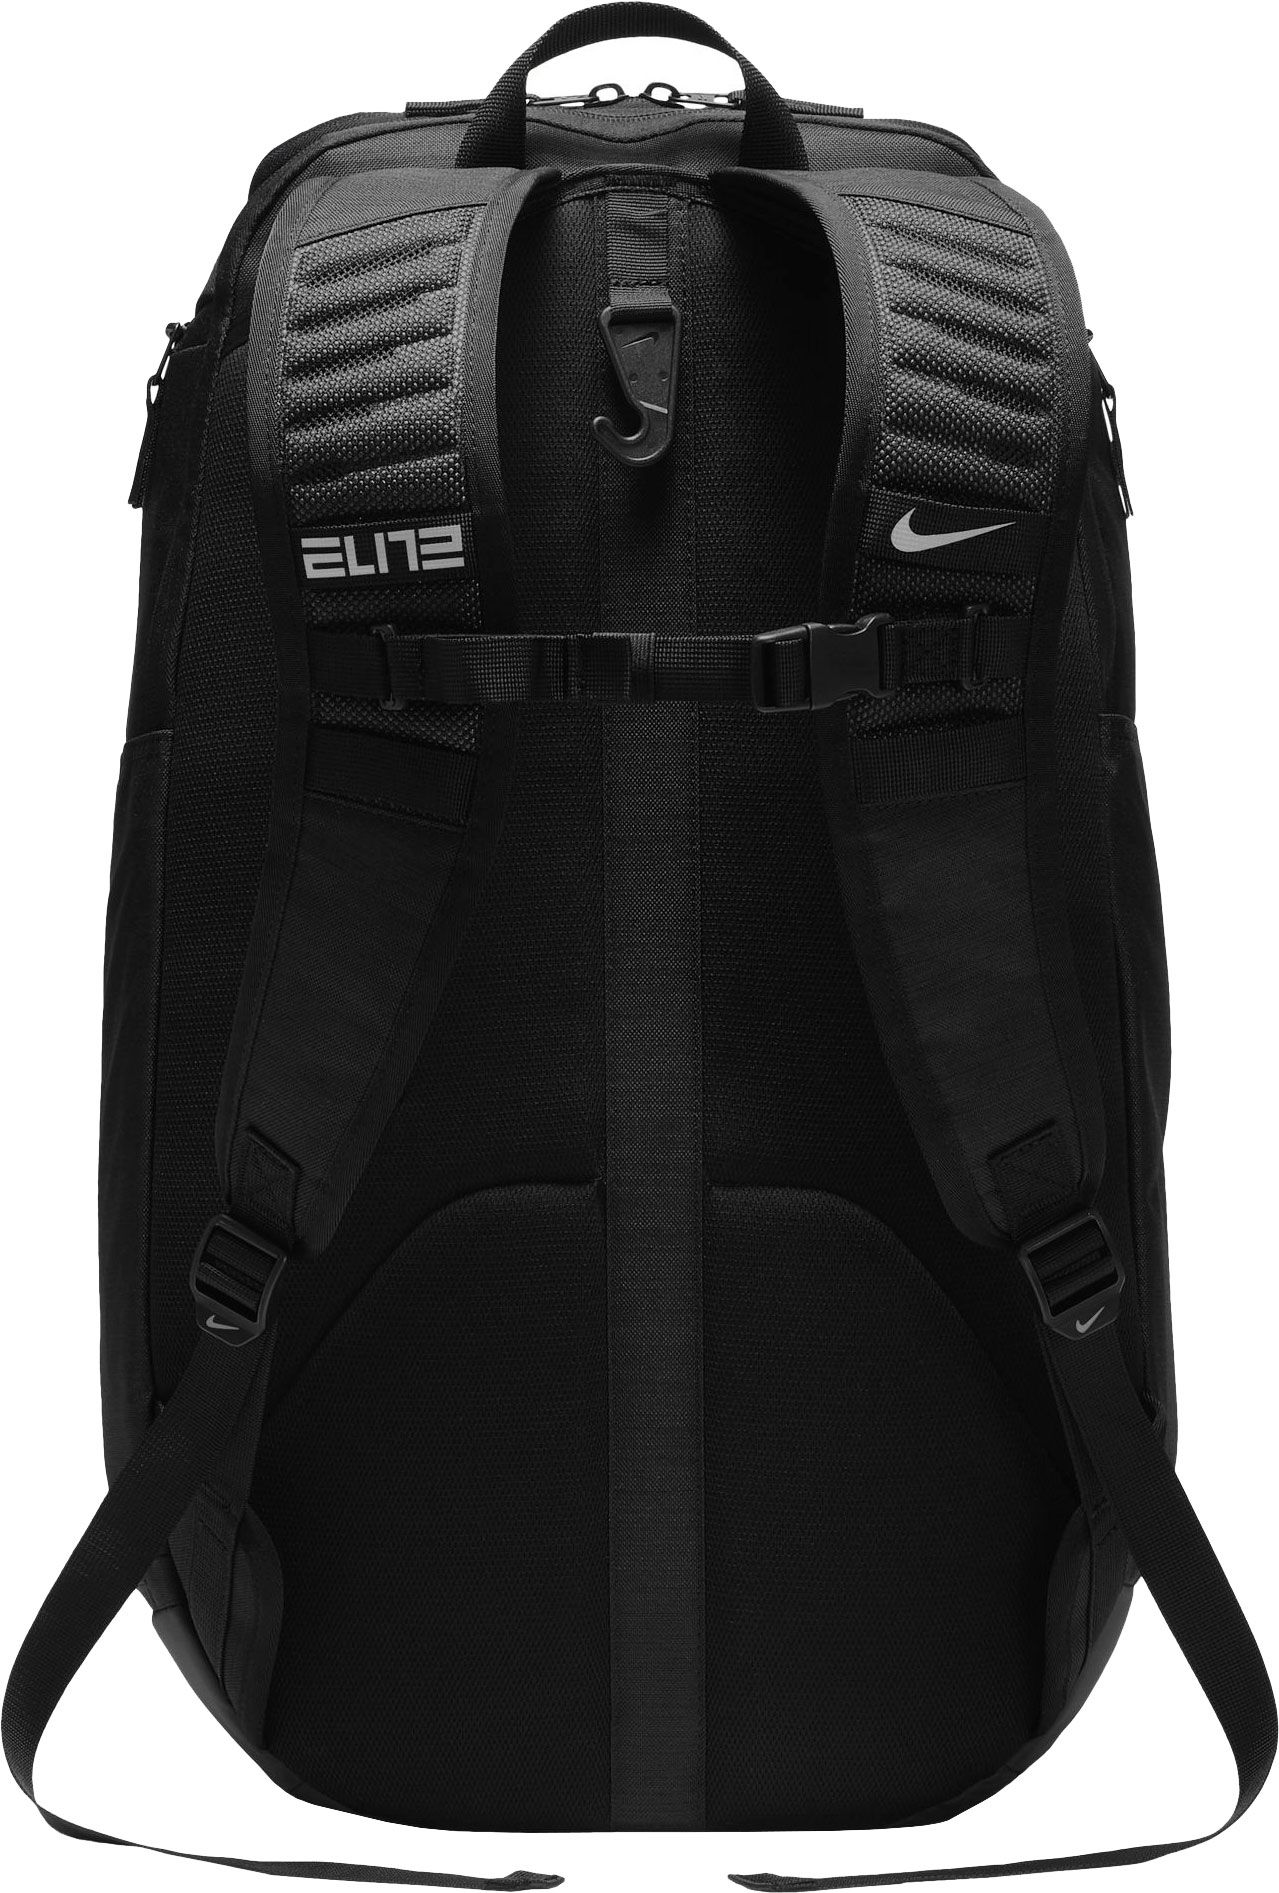 2018 nike elite backpack